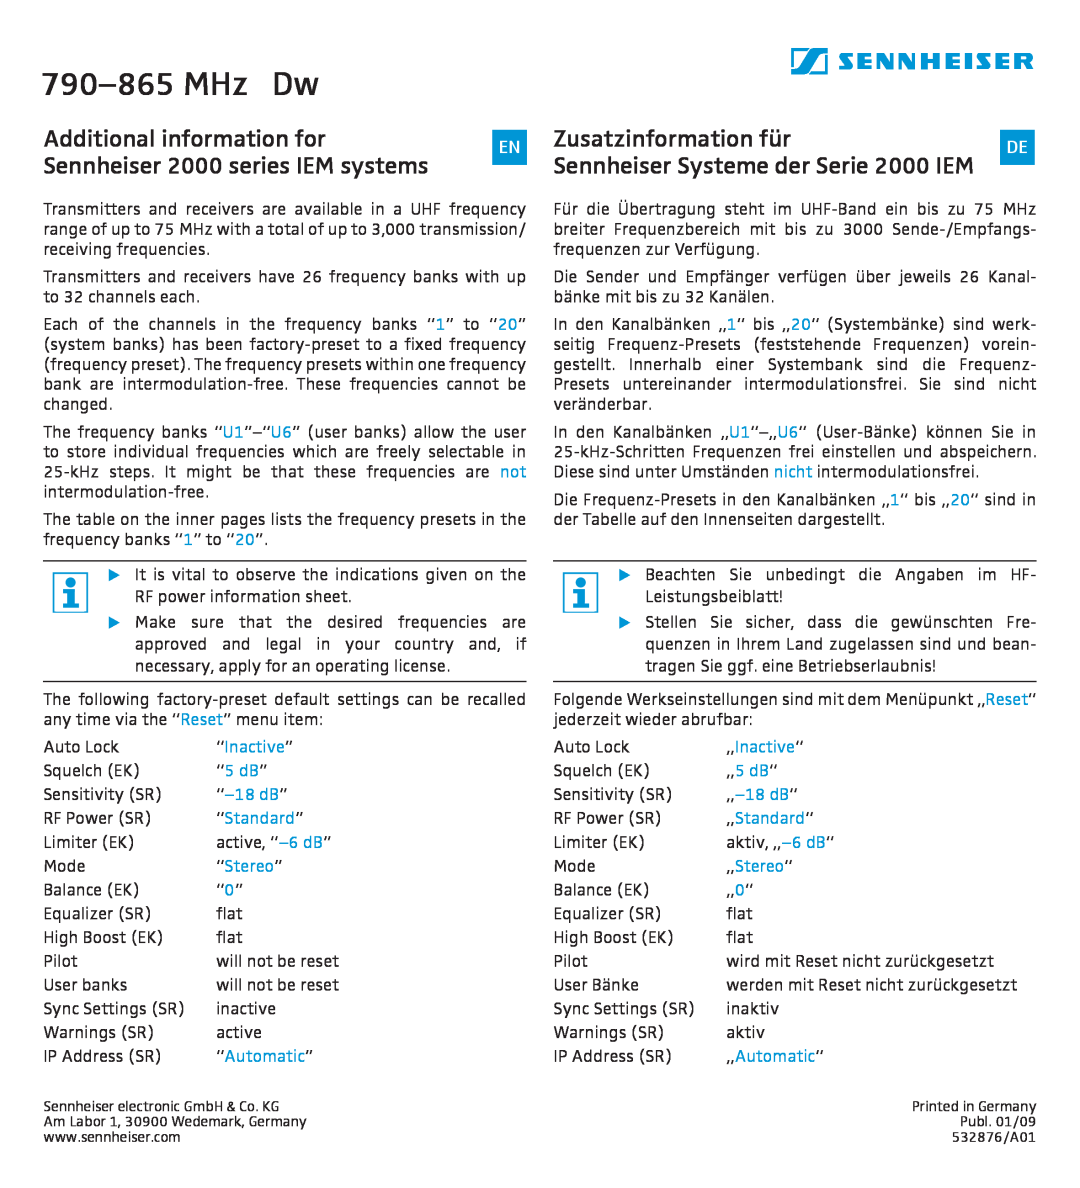 Sennheiser manual 790-865MHz Dw, Zusatzinformation für, Sennheiser Systeme der Serie 2000 IEM 